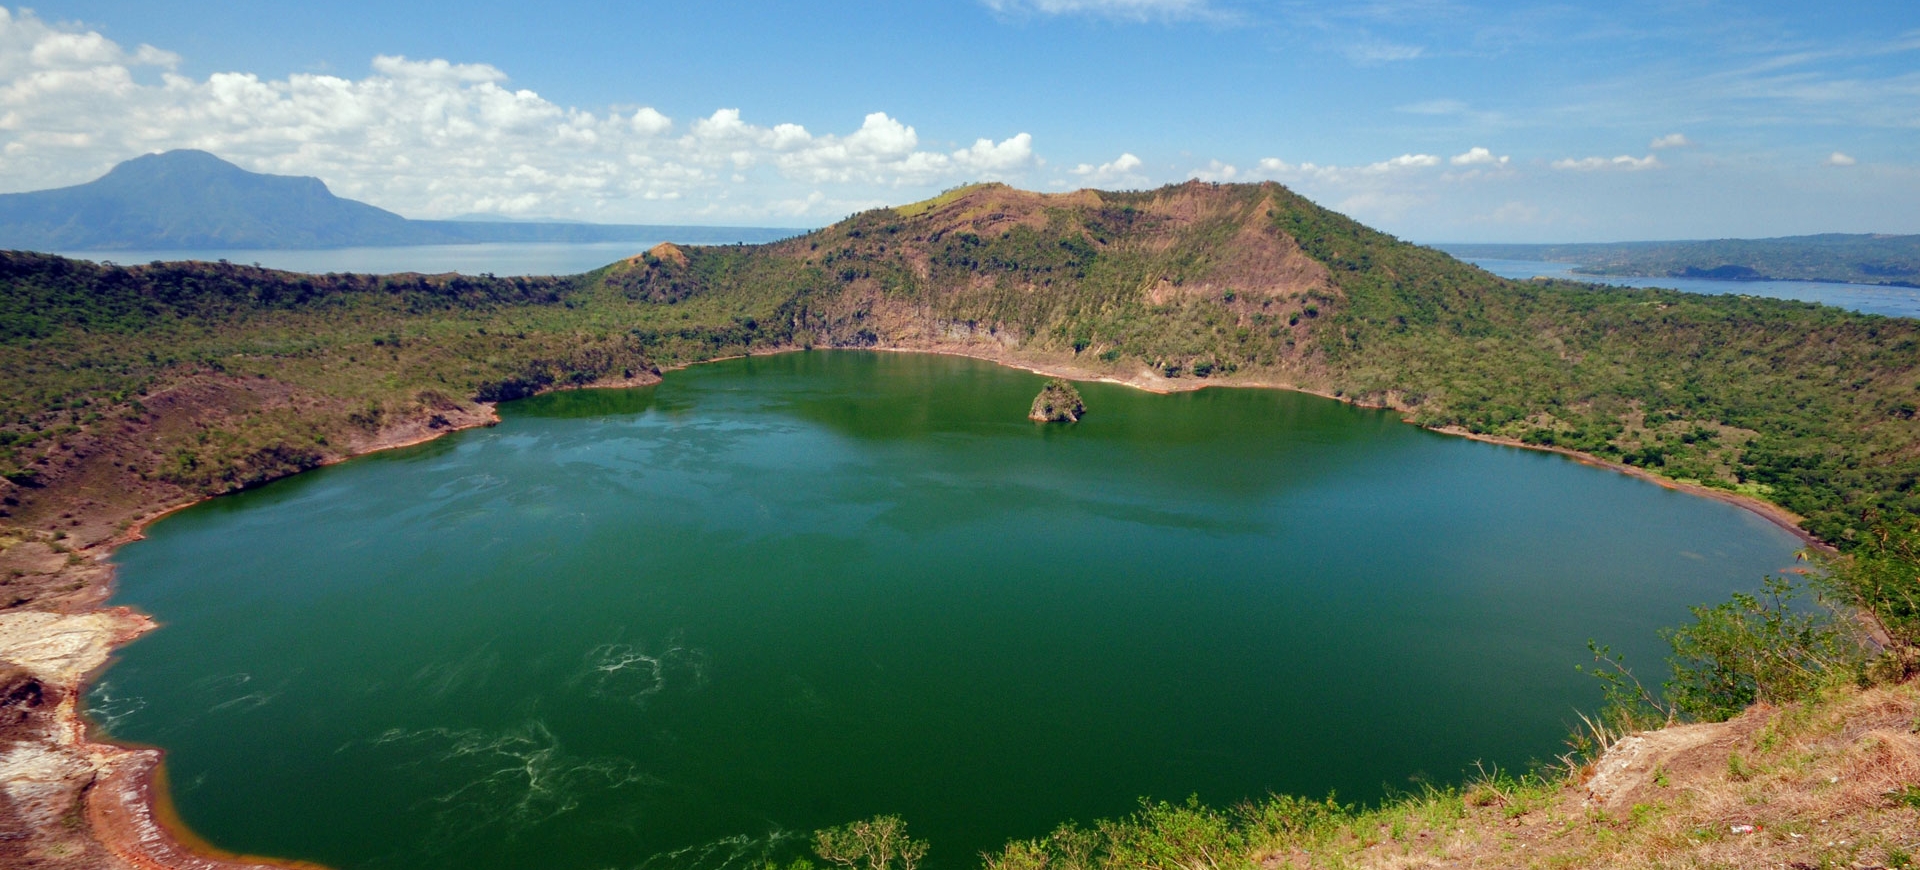 Tour de un día en Taal: Lago Taal, Volcán Taal y
Ciudad Patrimonio de Taal